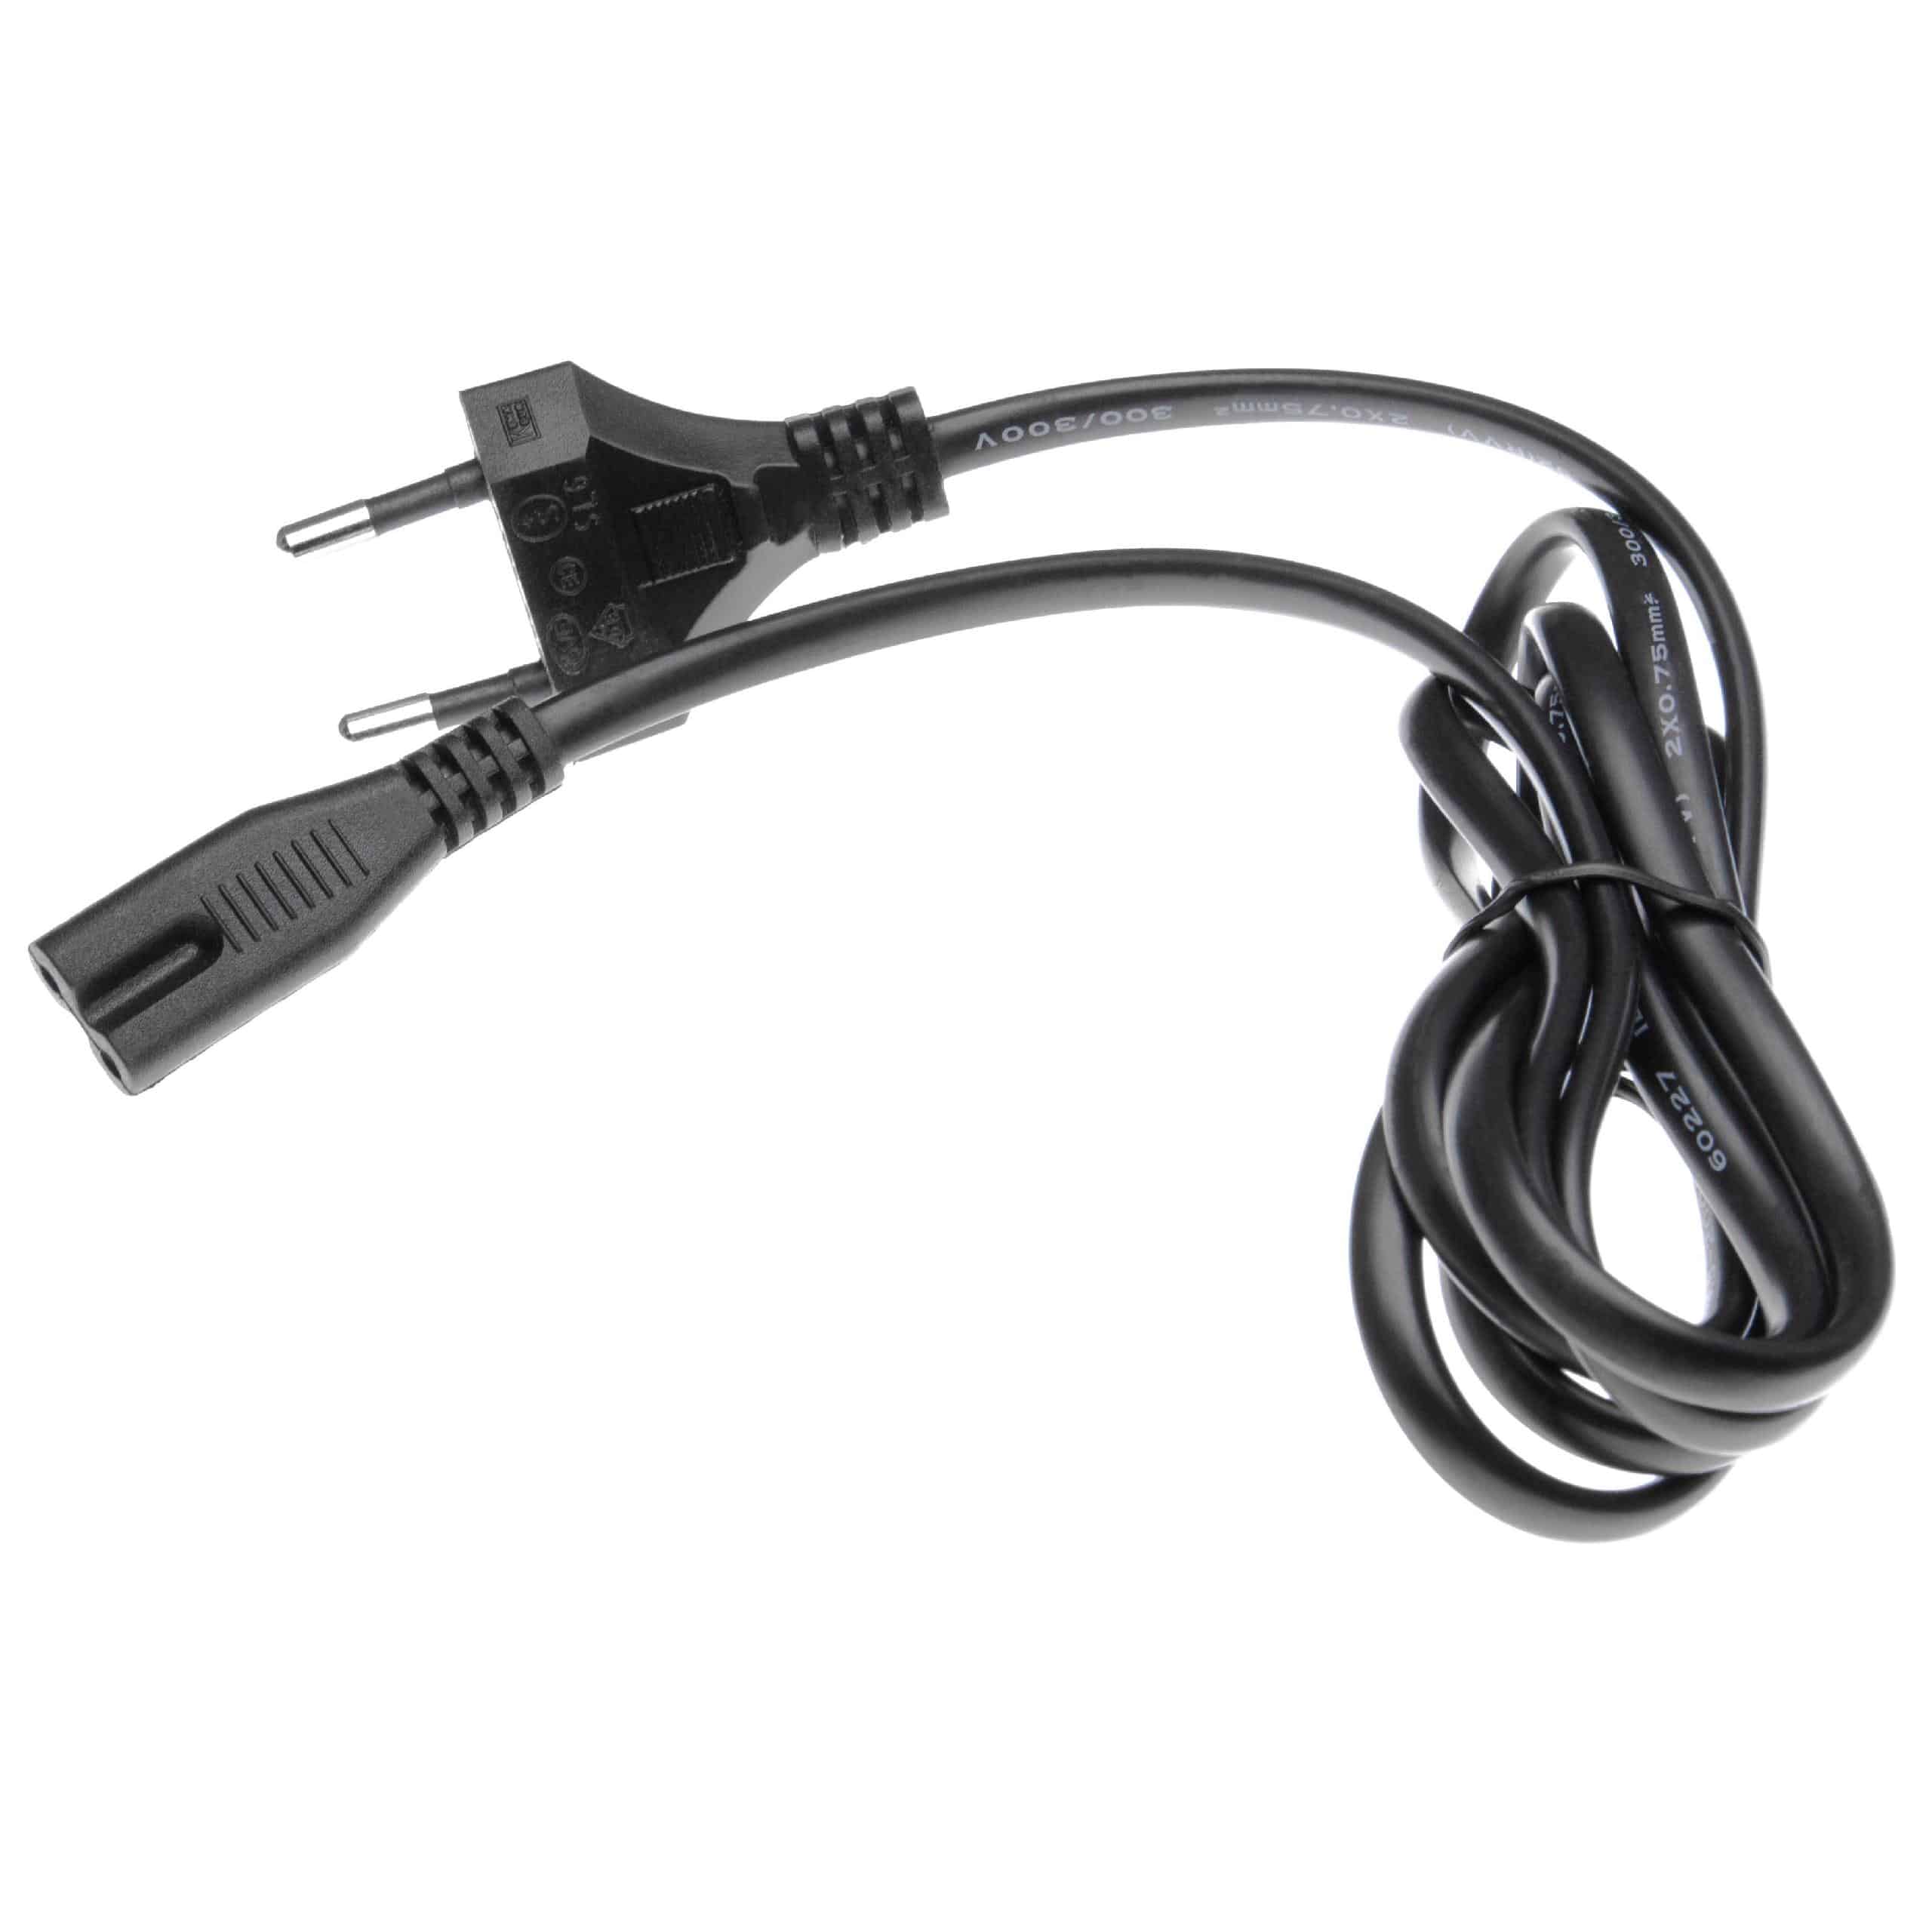 Cable de red C7 euroconector compatible con dispositivo IEC por ej. PC, monitor, ordenador - 1,2 m